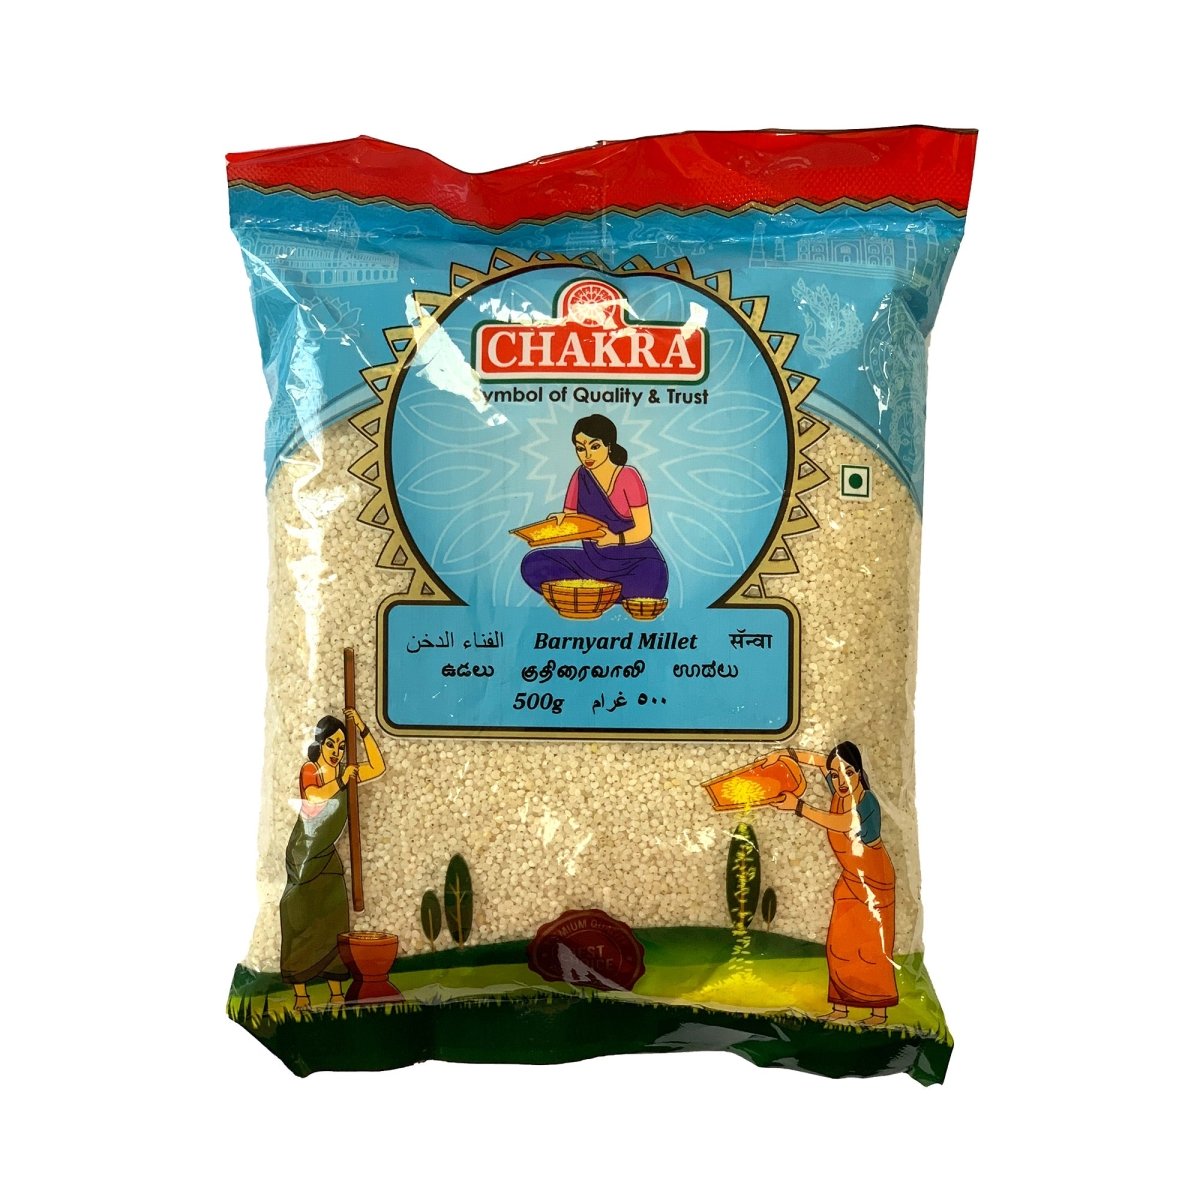 Chakra Barnyard Millet - Tulsidas